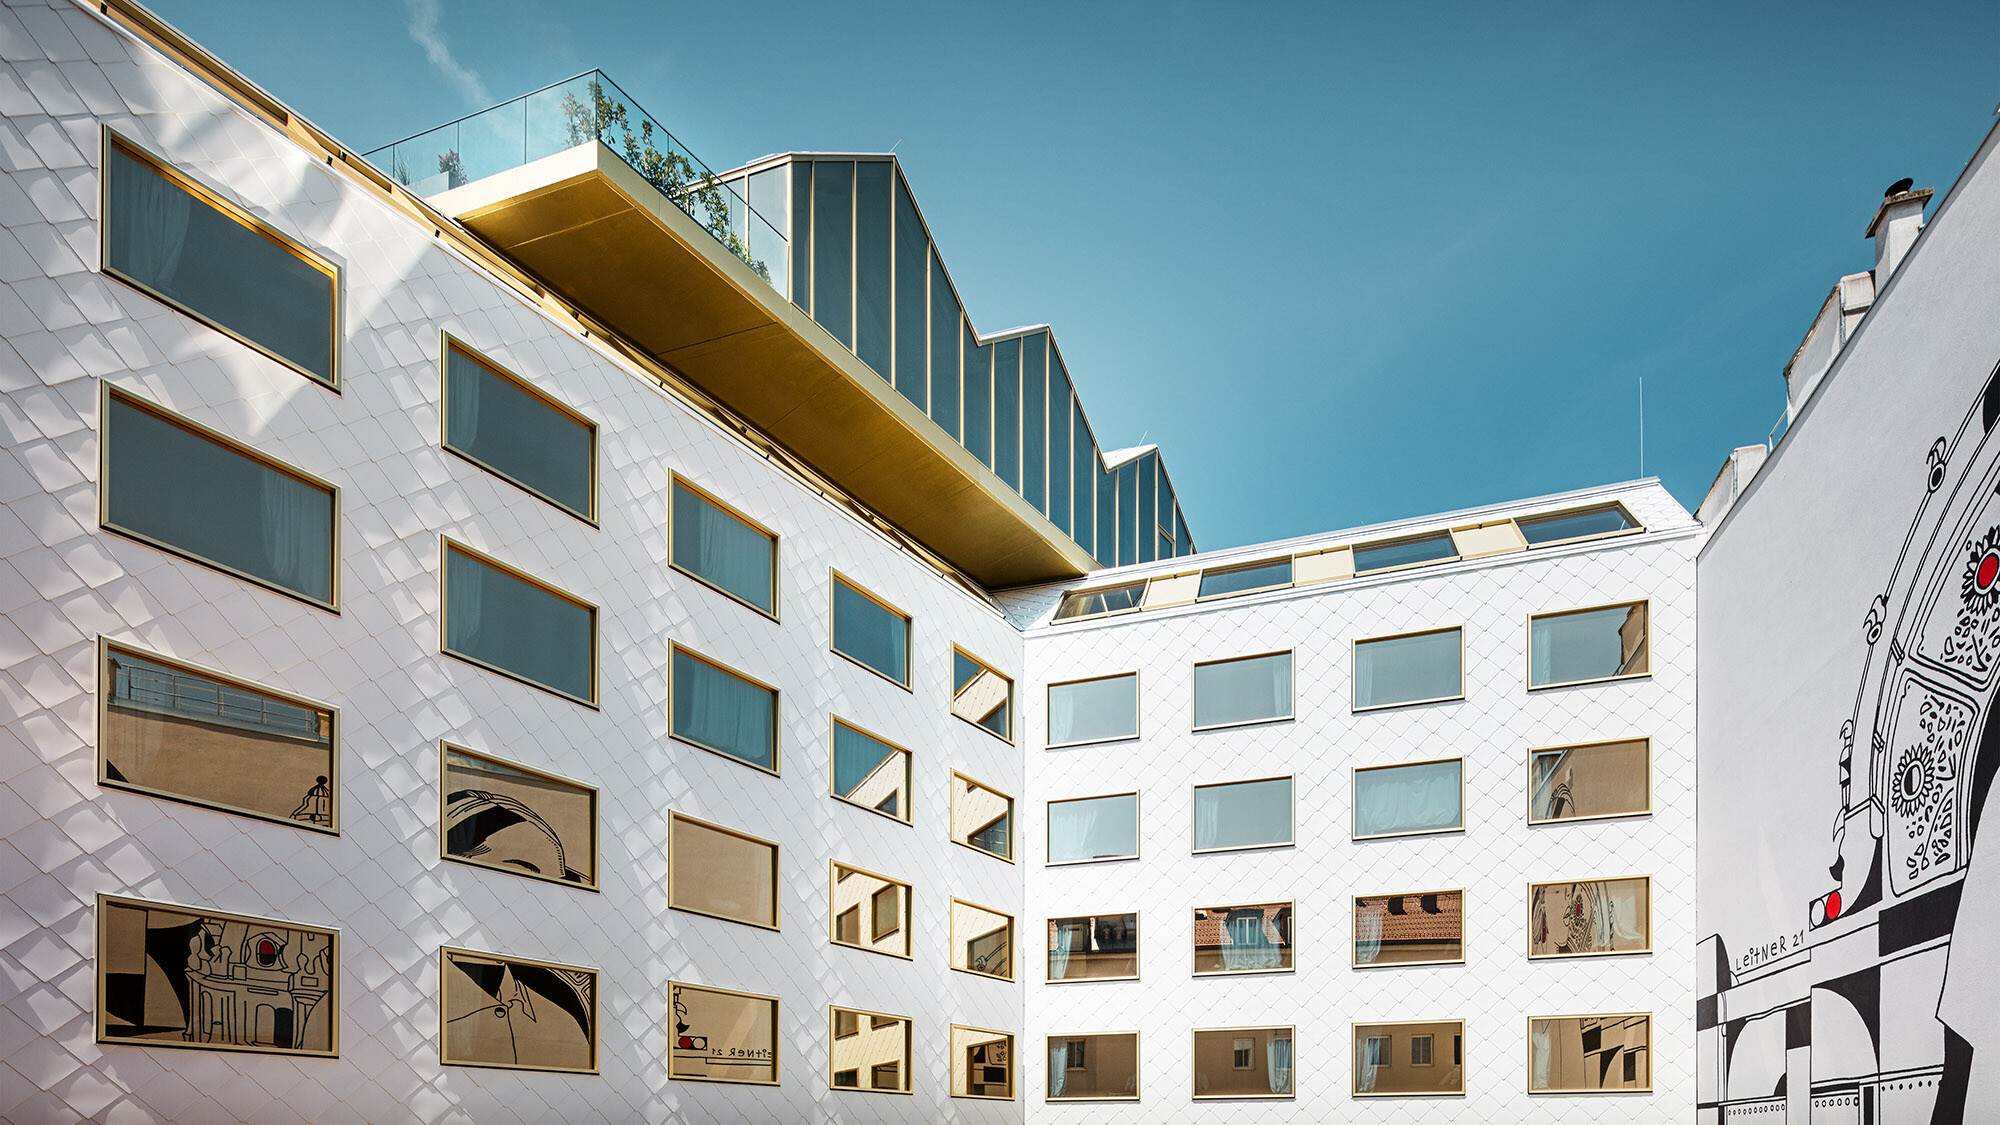 Blick auf das Hotel vom Innenhof aus; ein Wandkunstwerk spiegelt sich in den Fenstern, die Rooftop Bar kragt leicht über dem Hotel aus.